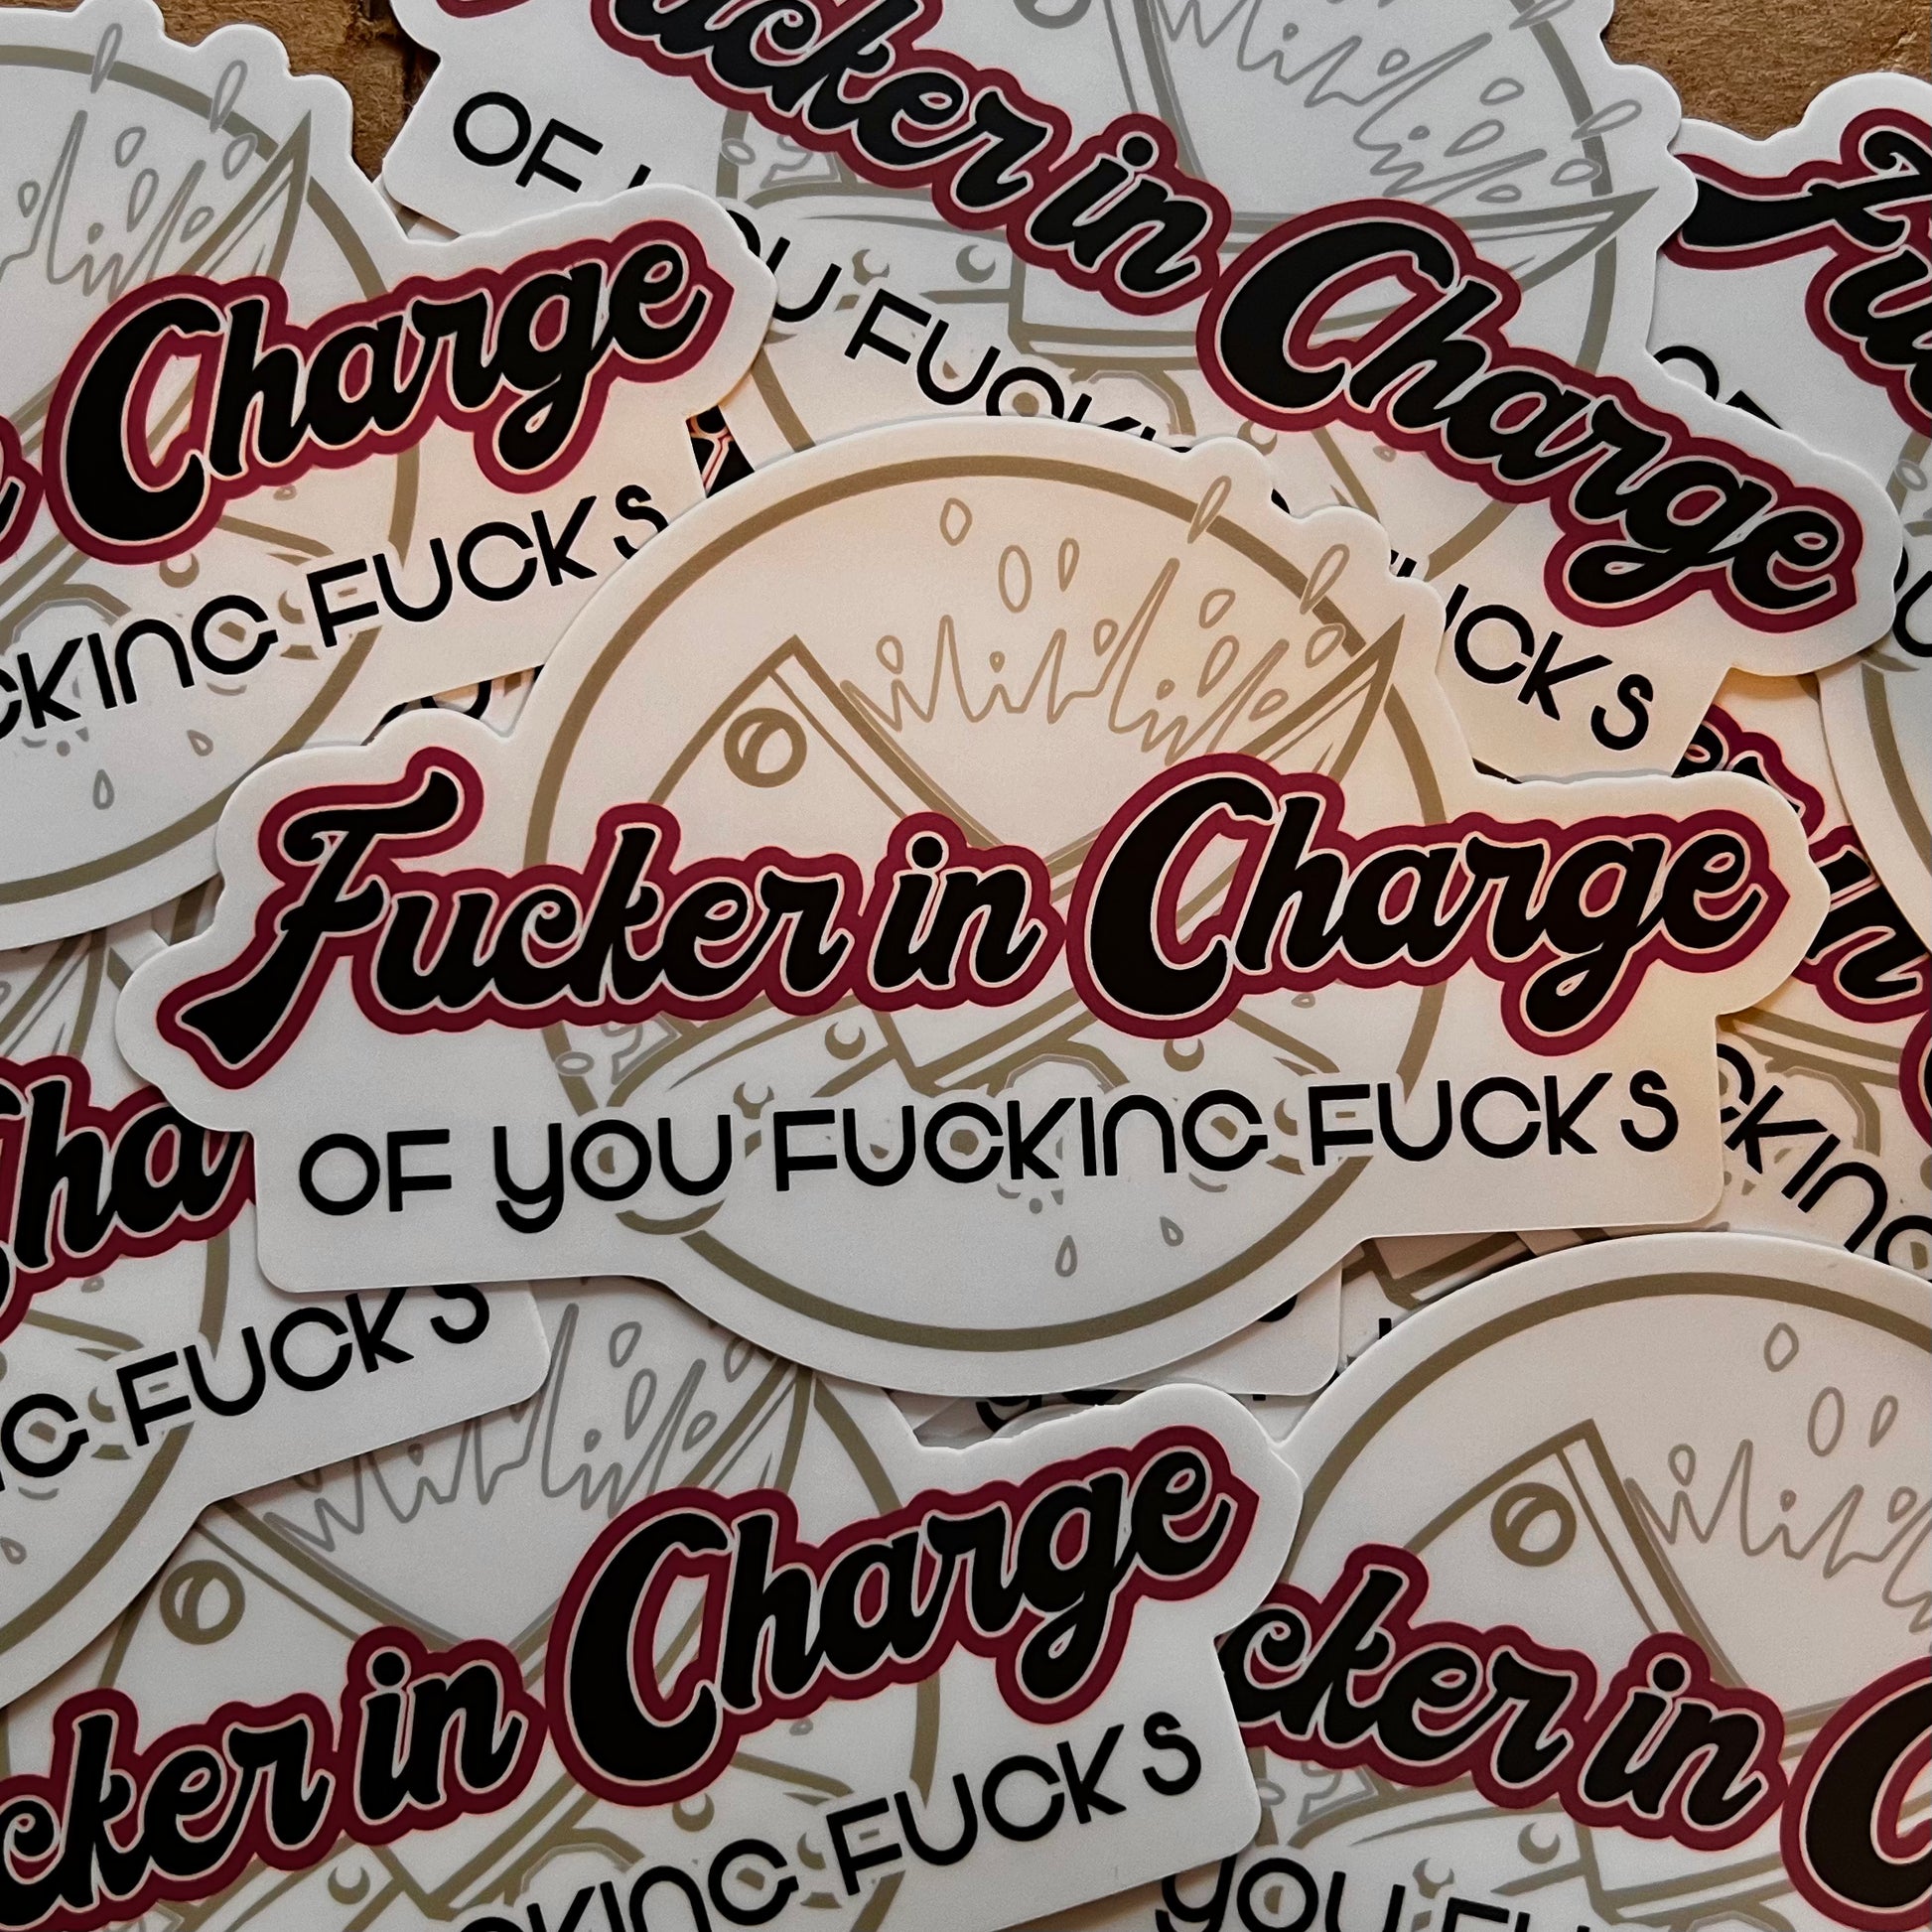 Fucker in Charge Sticker Cleaverandblade.com